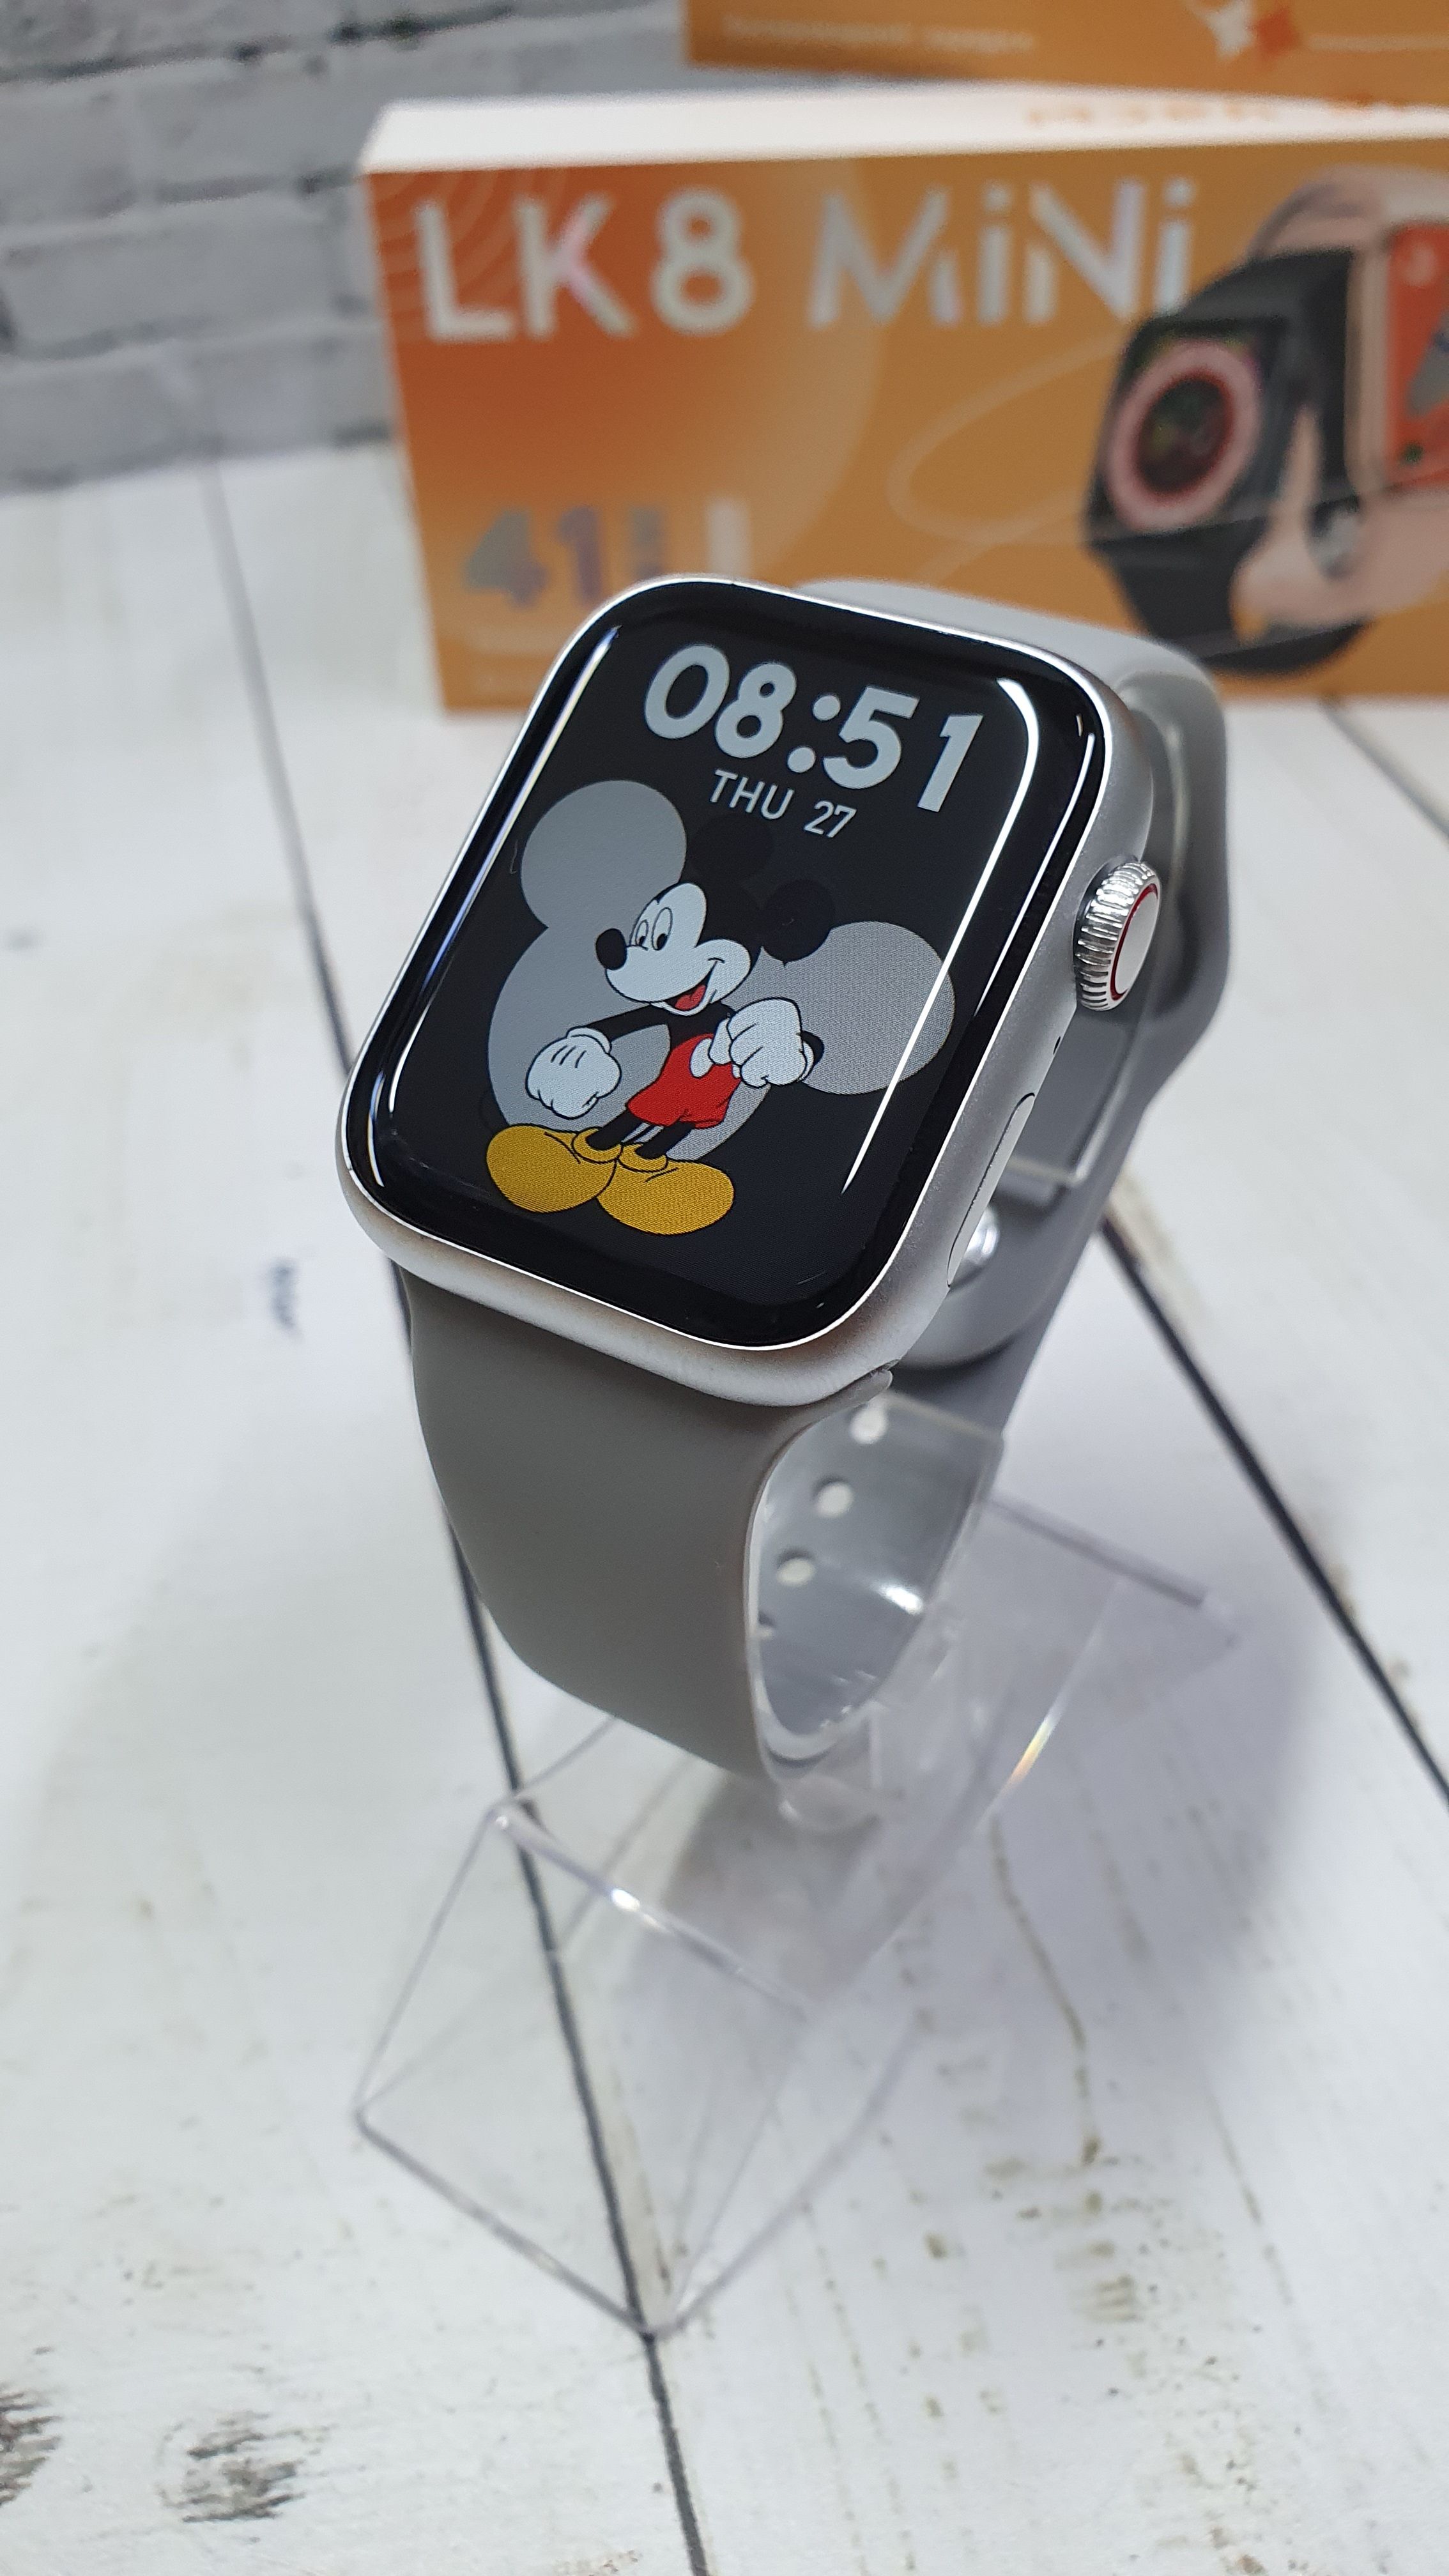 Часы lk 8 mini. Смарт часы lk8. LK 8 Mini Smart watch. Умные часы LK gt4 Mini. Часы LK watch 4 экраны.